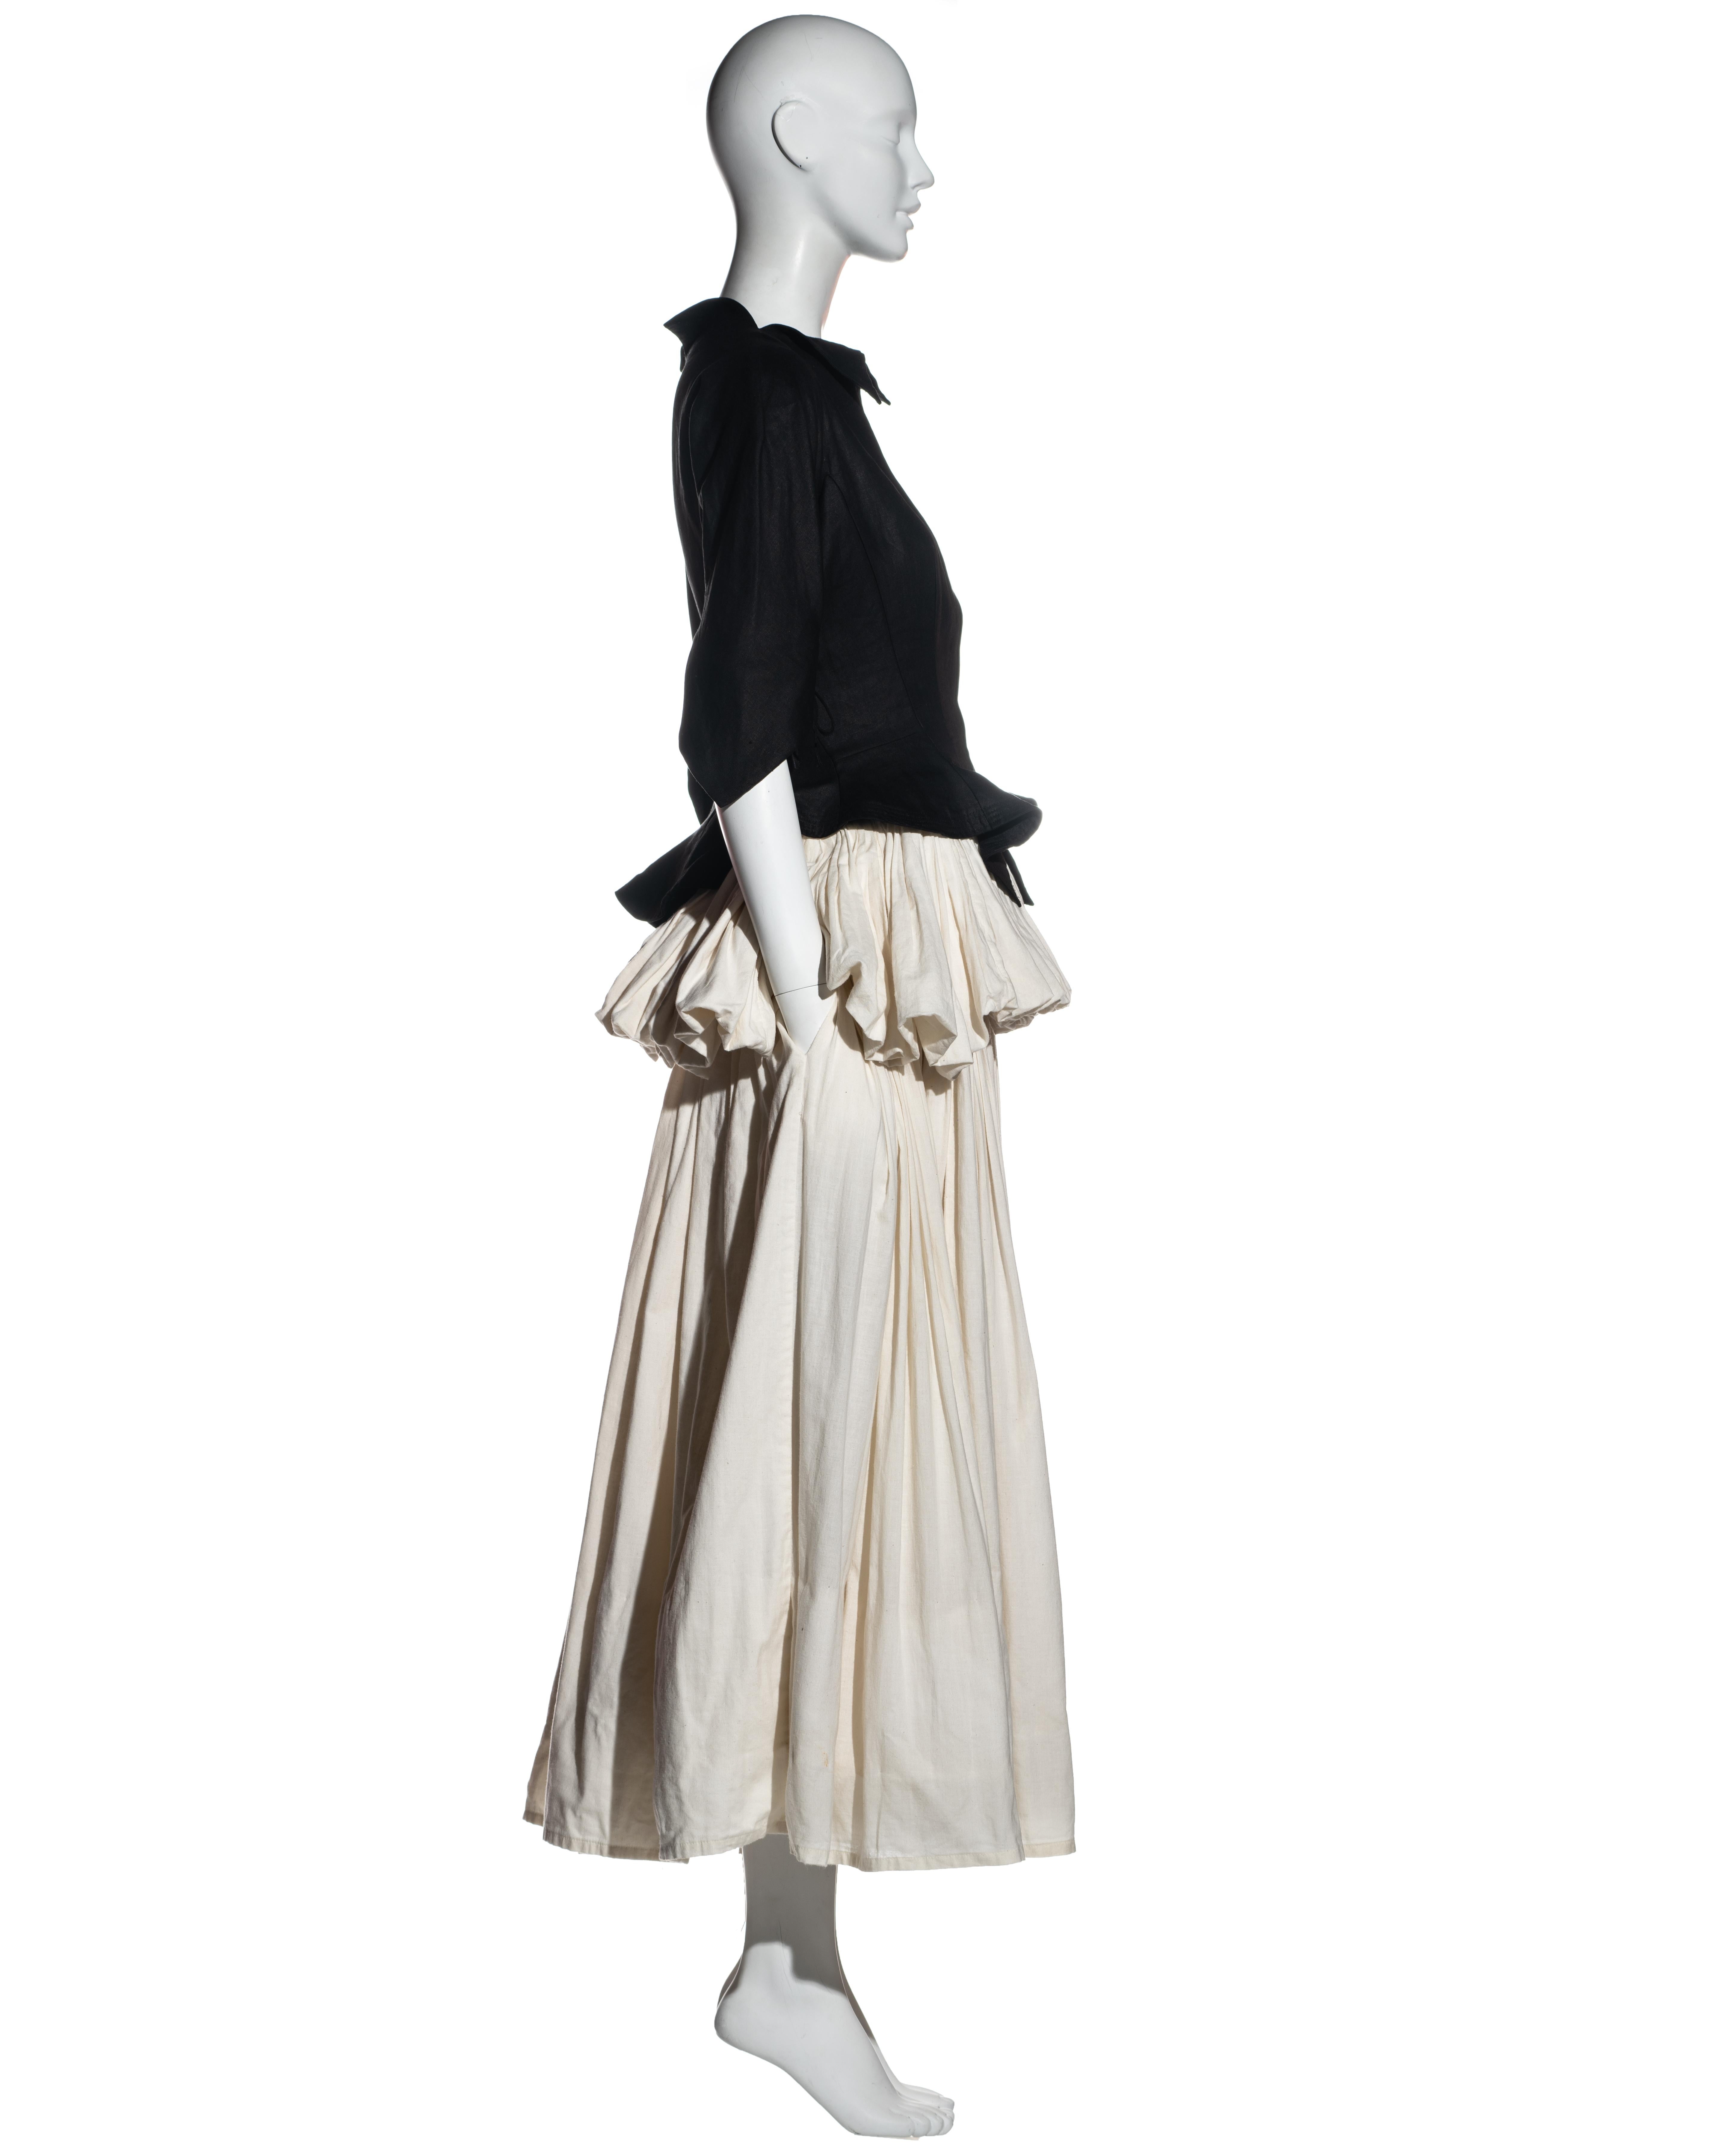 Women's Yohji Yamamoto black and white cotton bustled skirt and jacket set, ss 2000